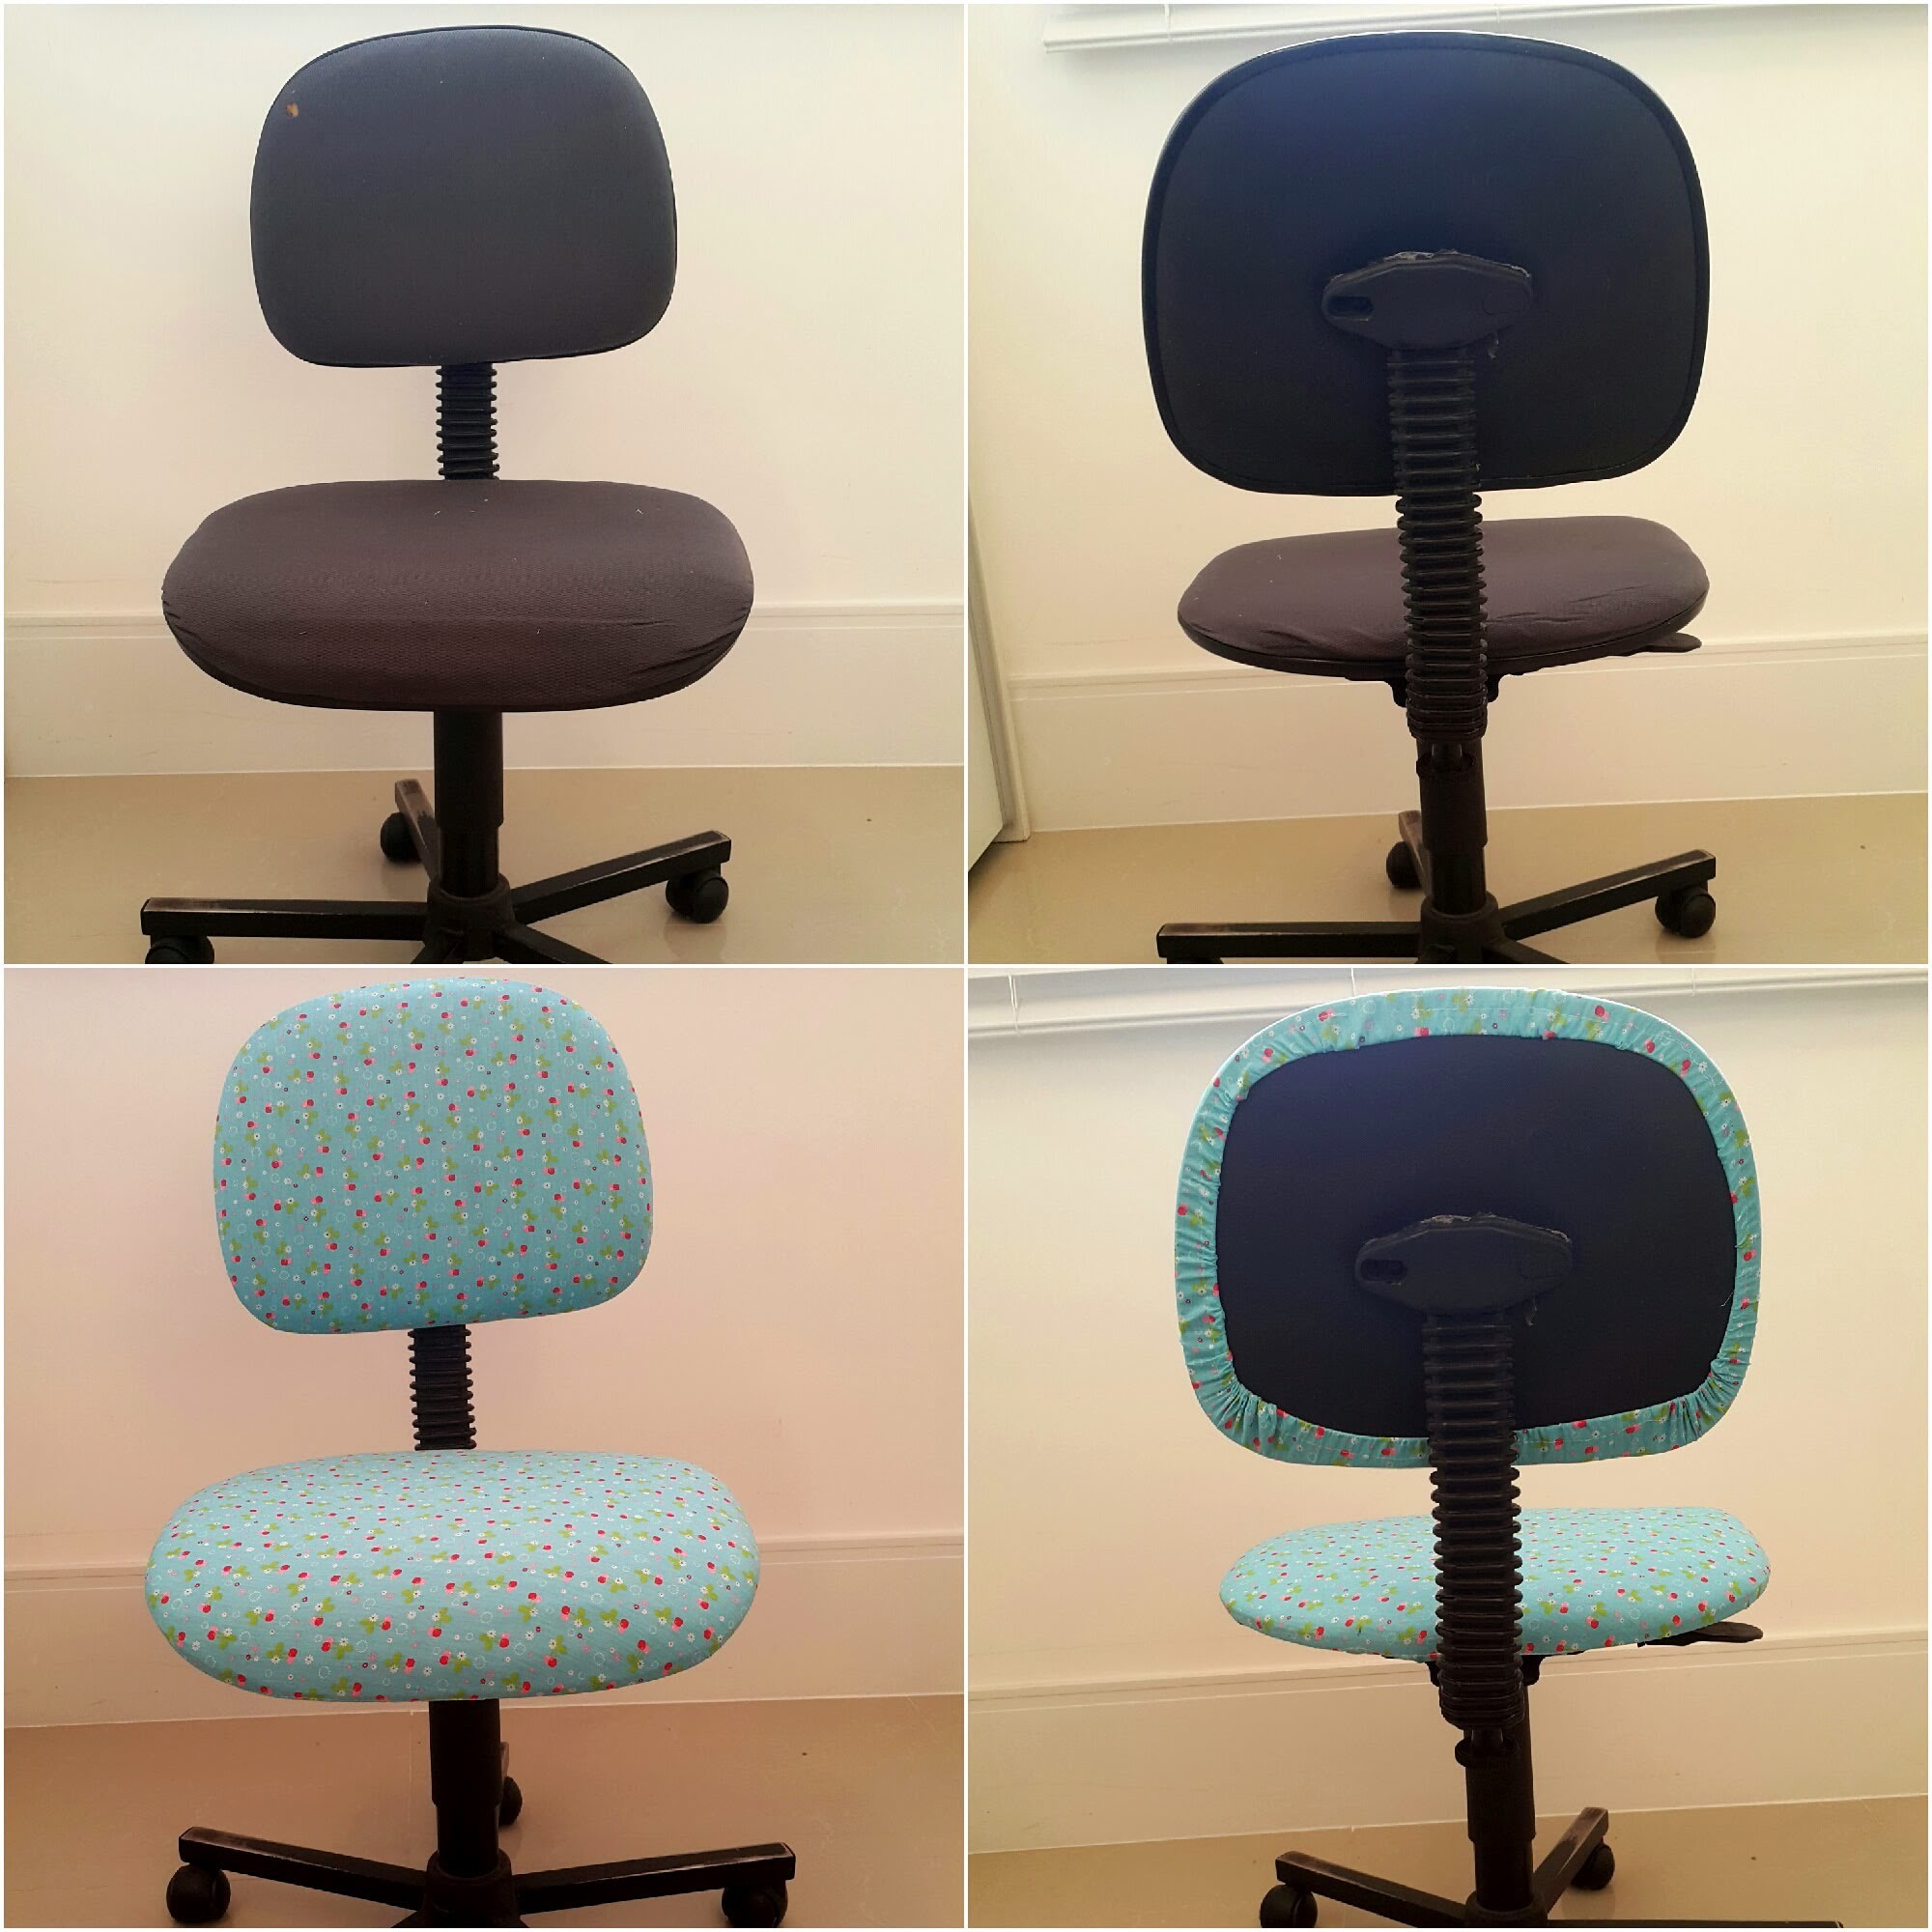 Reformando sua Cadeira do Escritório - Capa para Cadeira - DIY Office Chair Covering